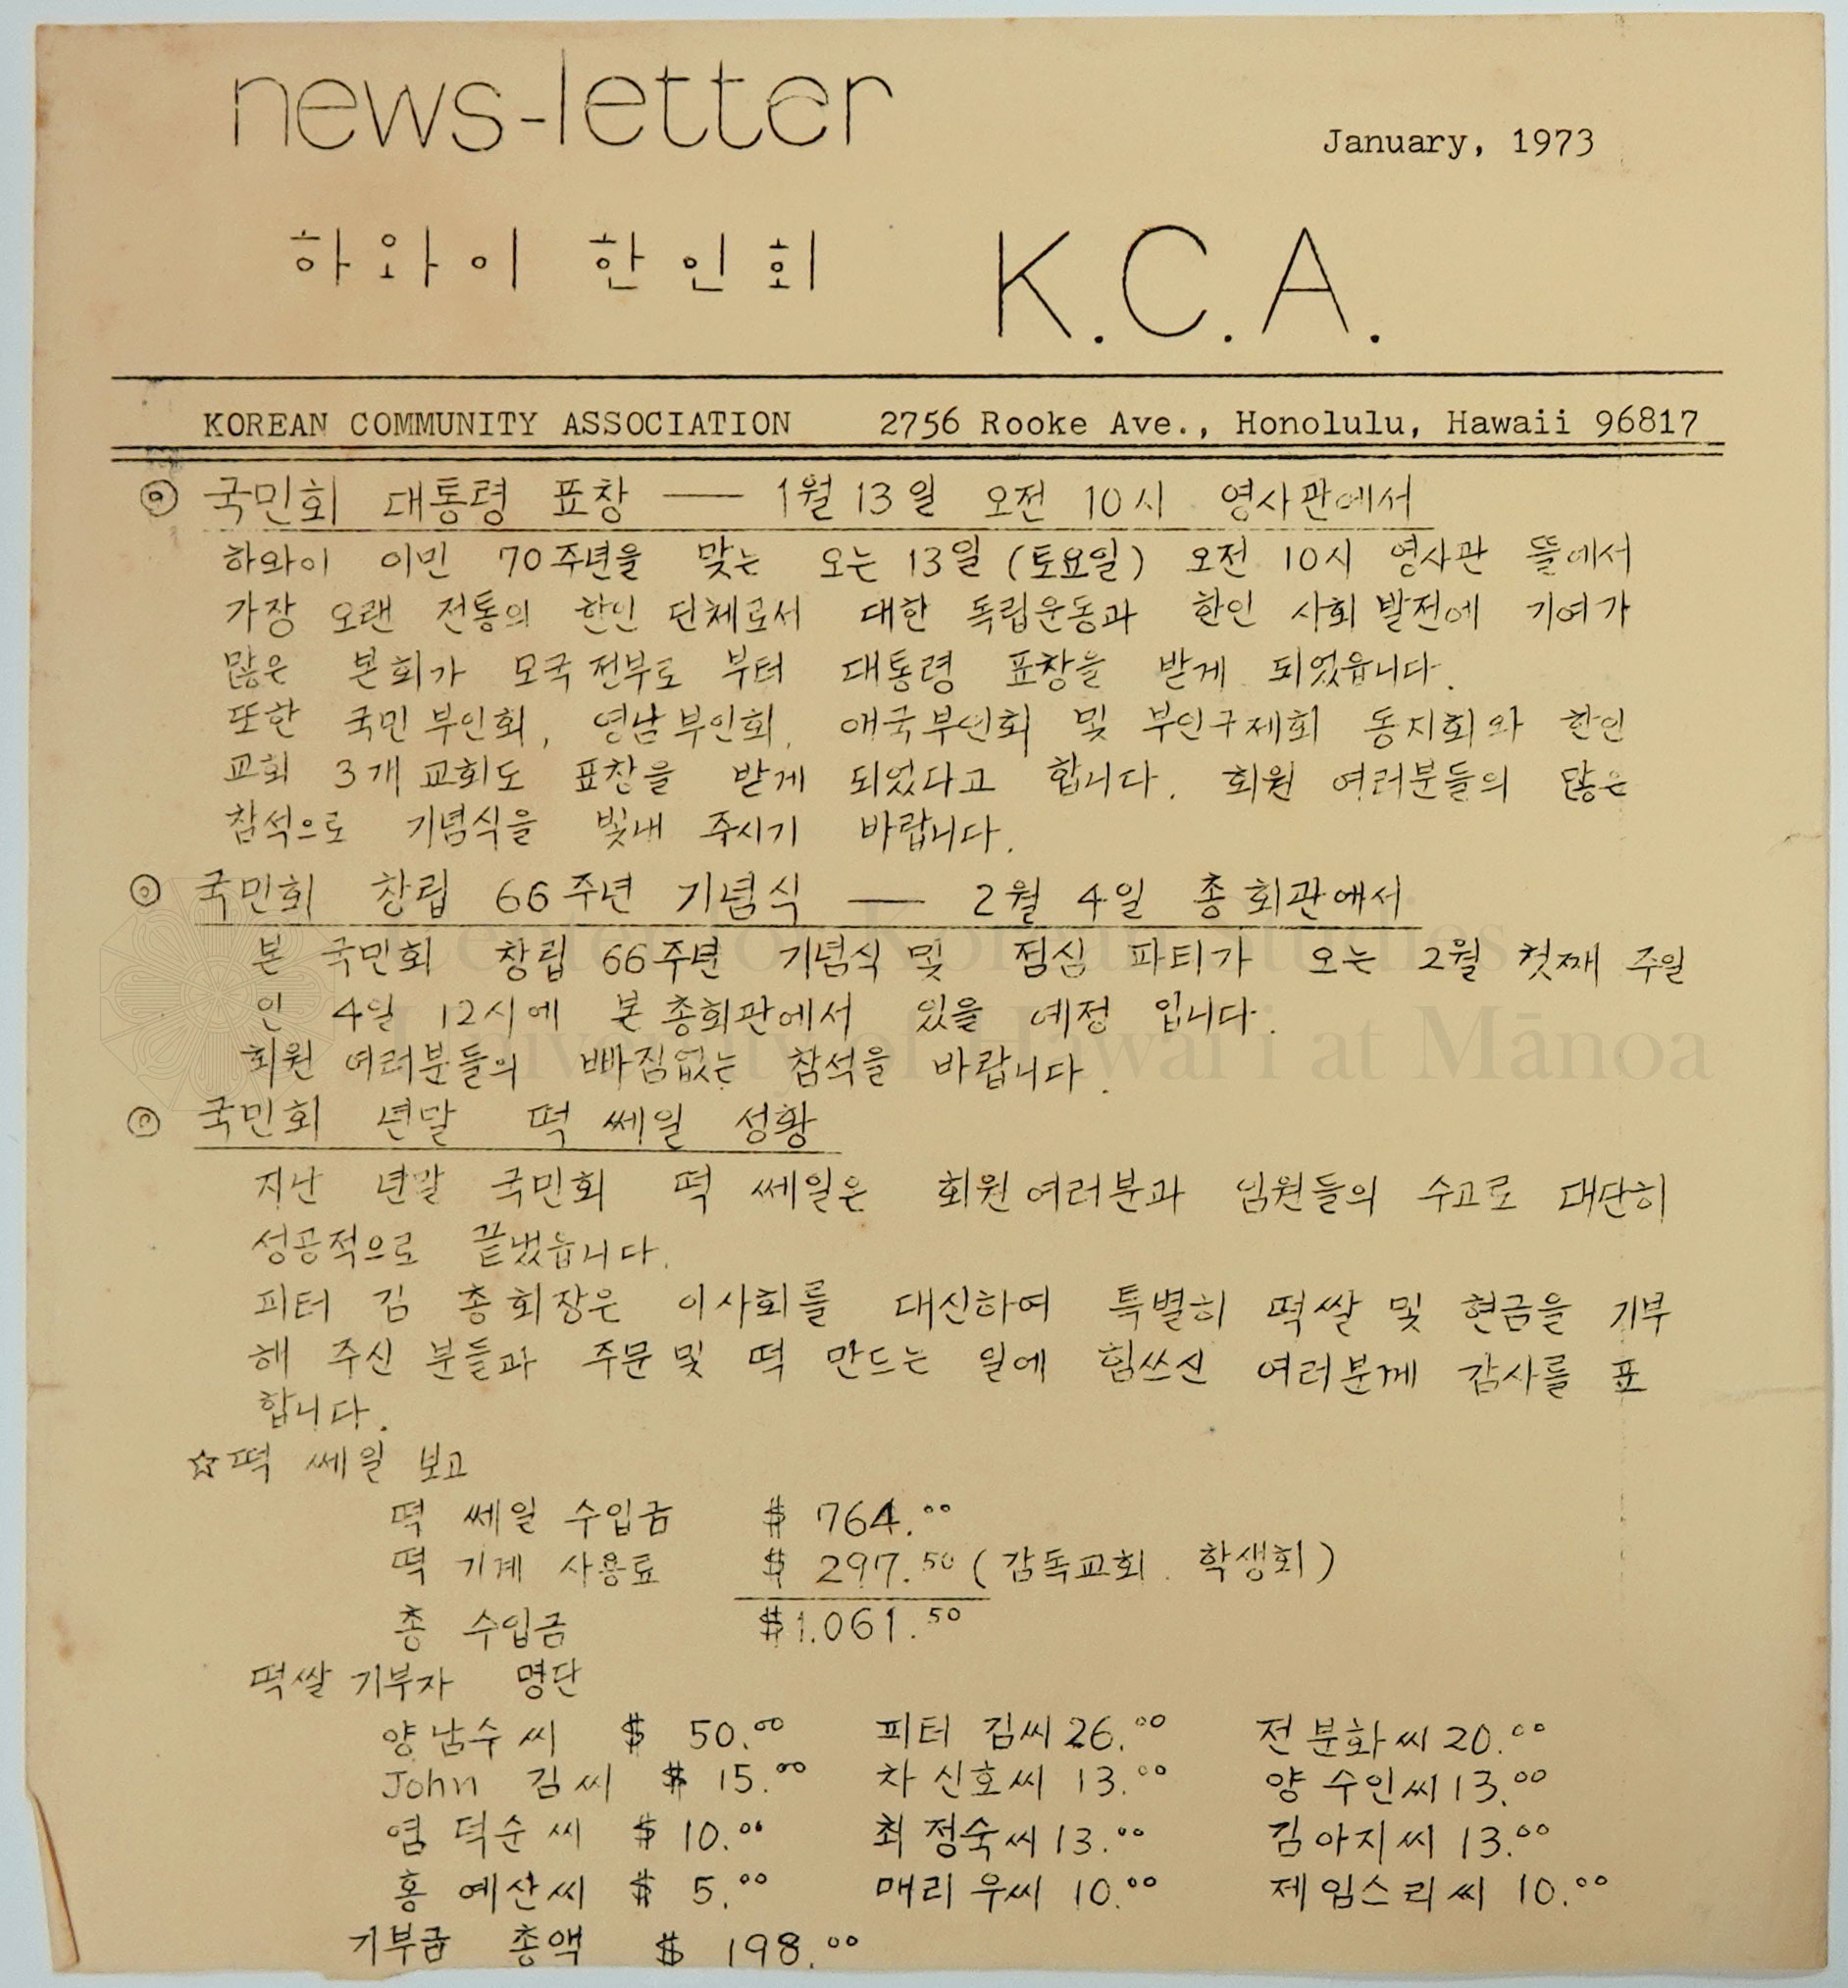 Korean Community Association Newsletter, January 1973